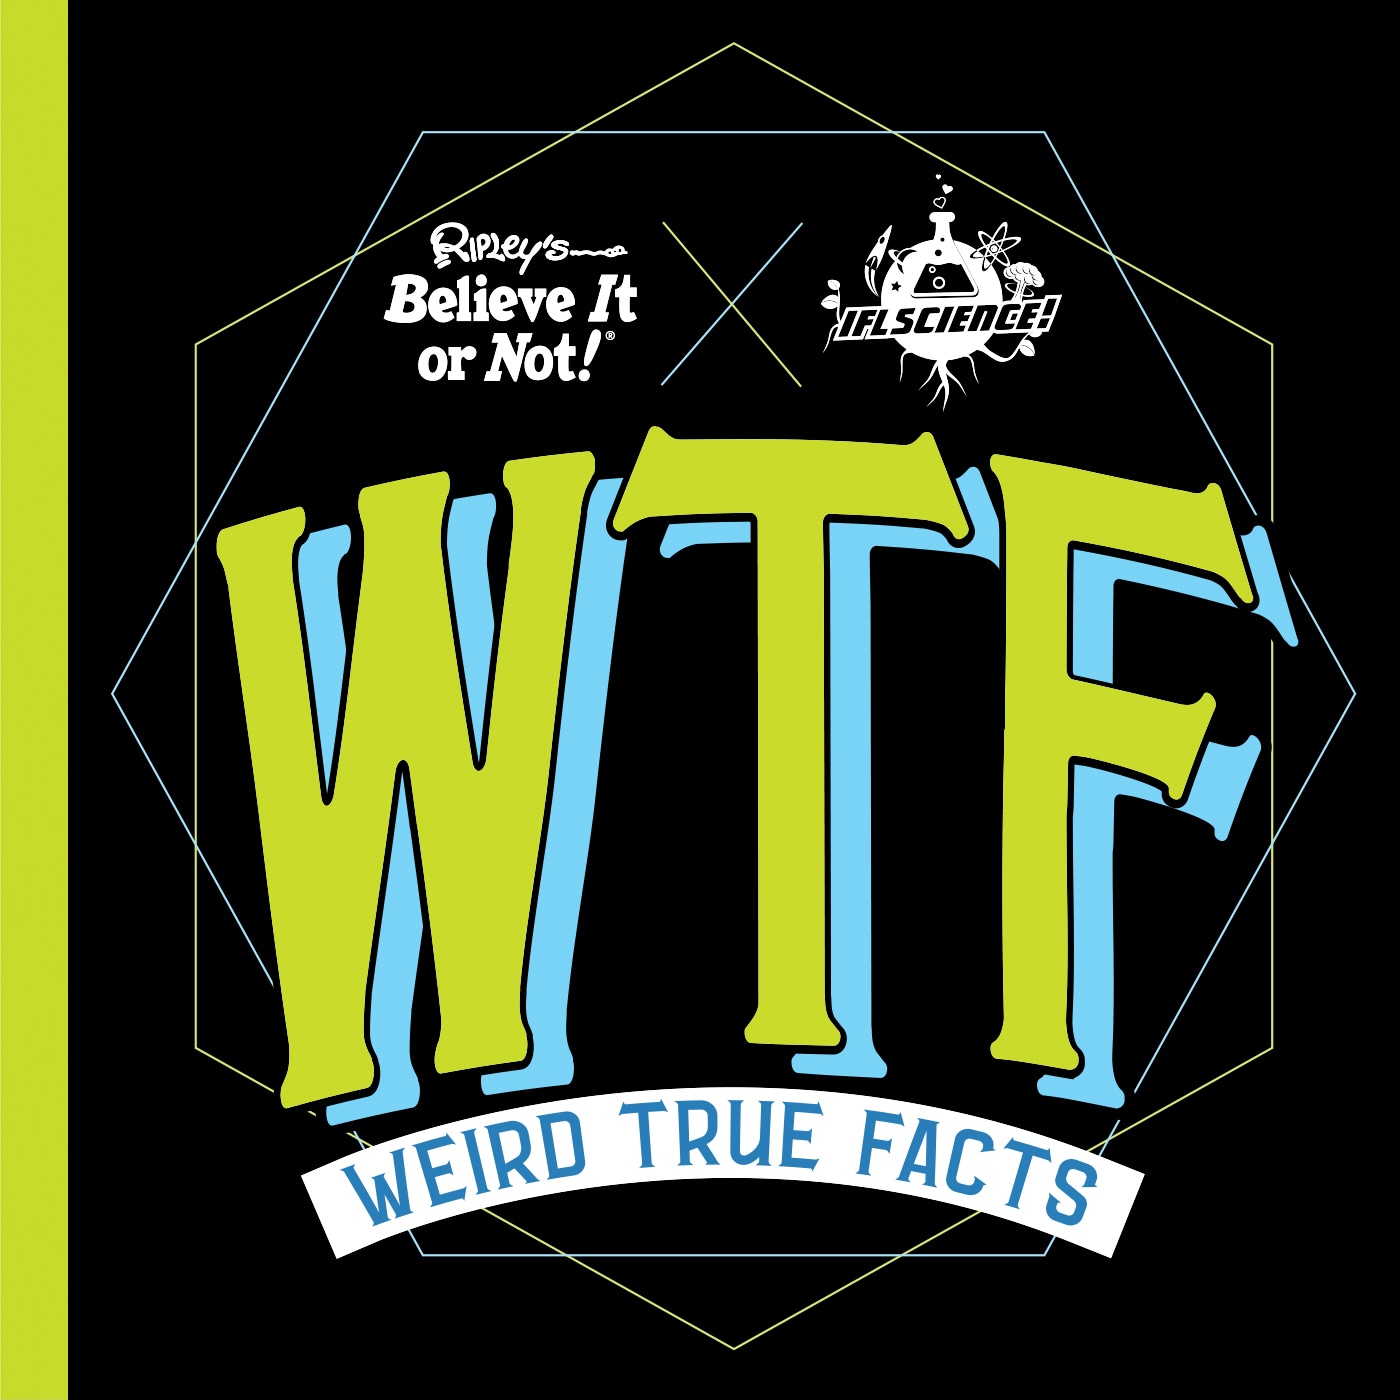 Ripley's Believe It or Not! Weird True Facts